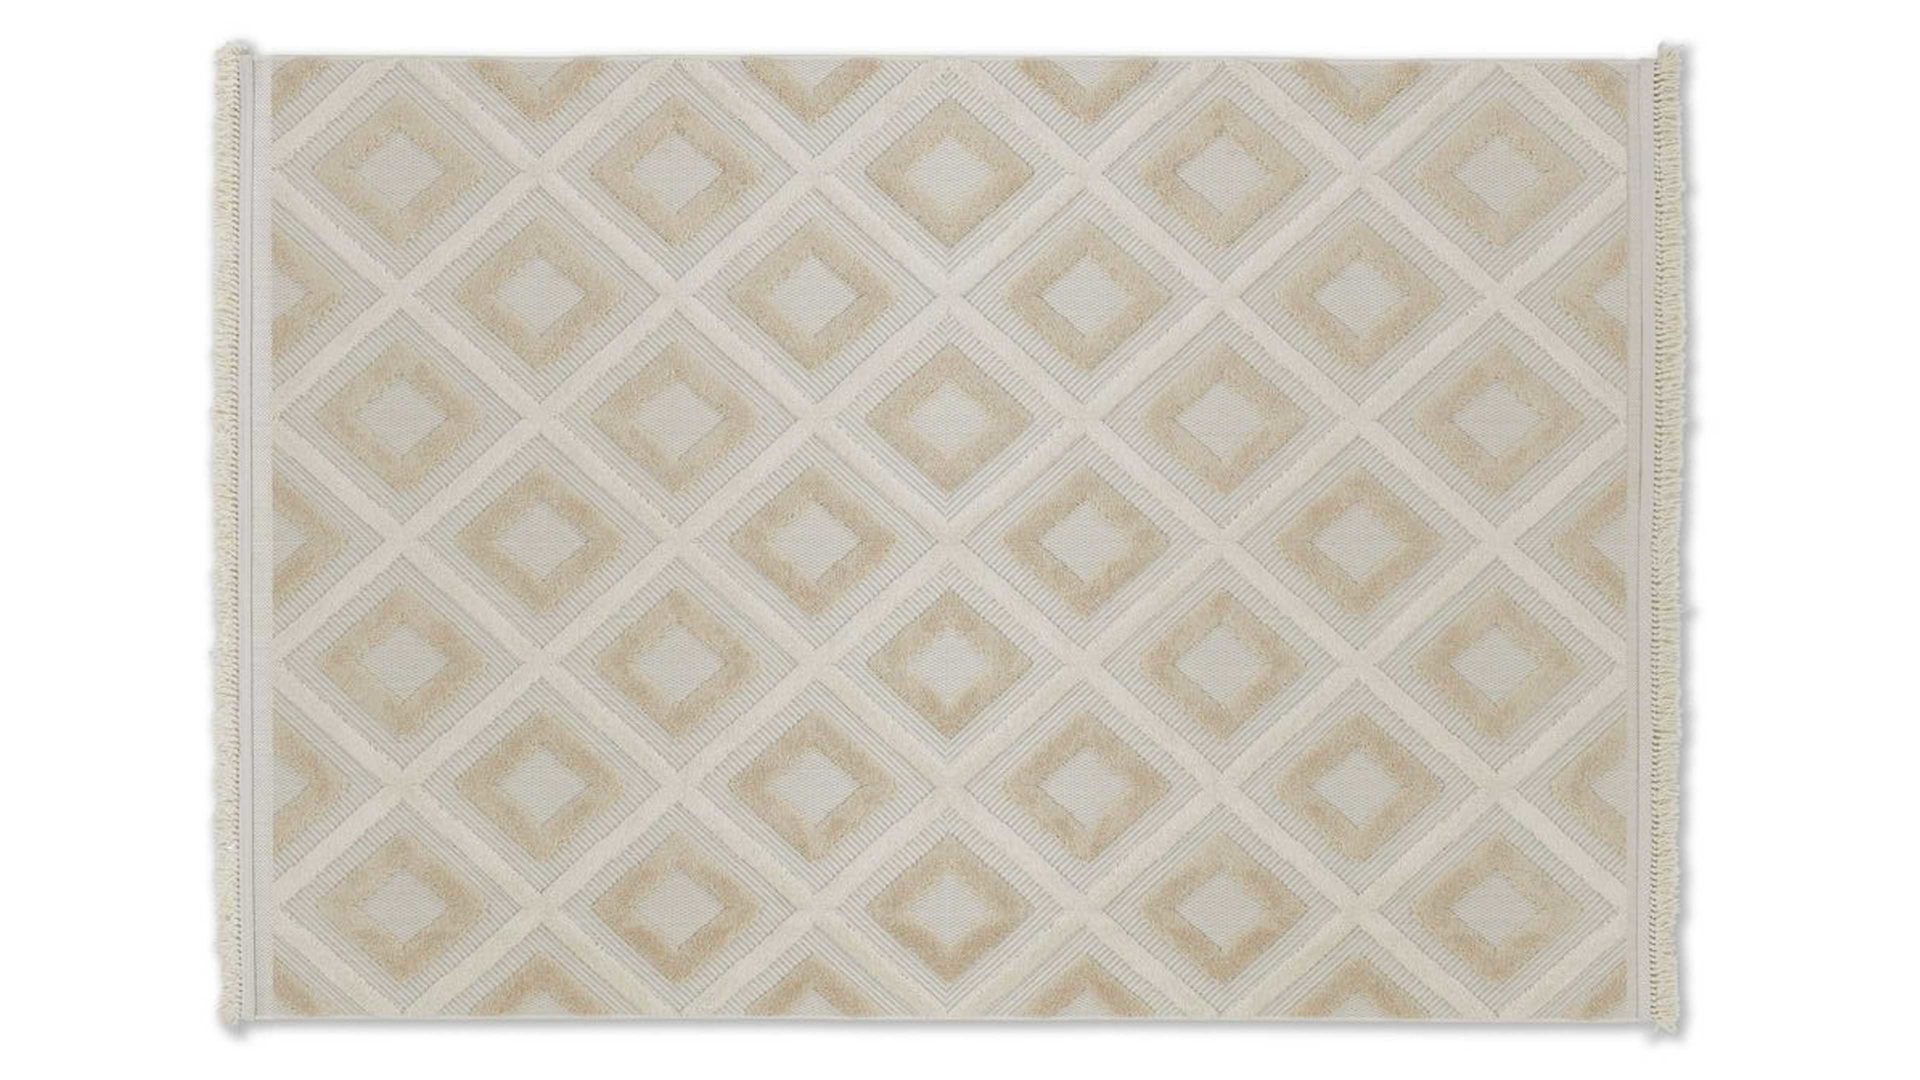 Outdoor-Teppich Golze | astra aus Kunstfaser in Beige ASTRA® Outdoor Teppich Summer beige Kunstfaser - ca. 160 x 230 cm